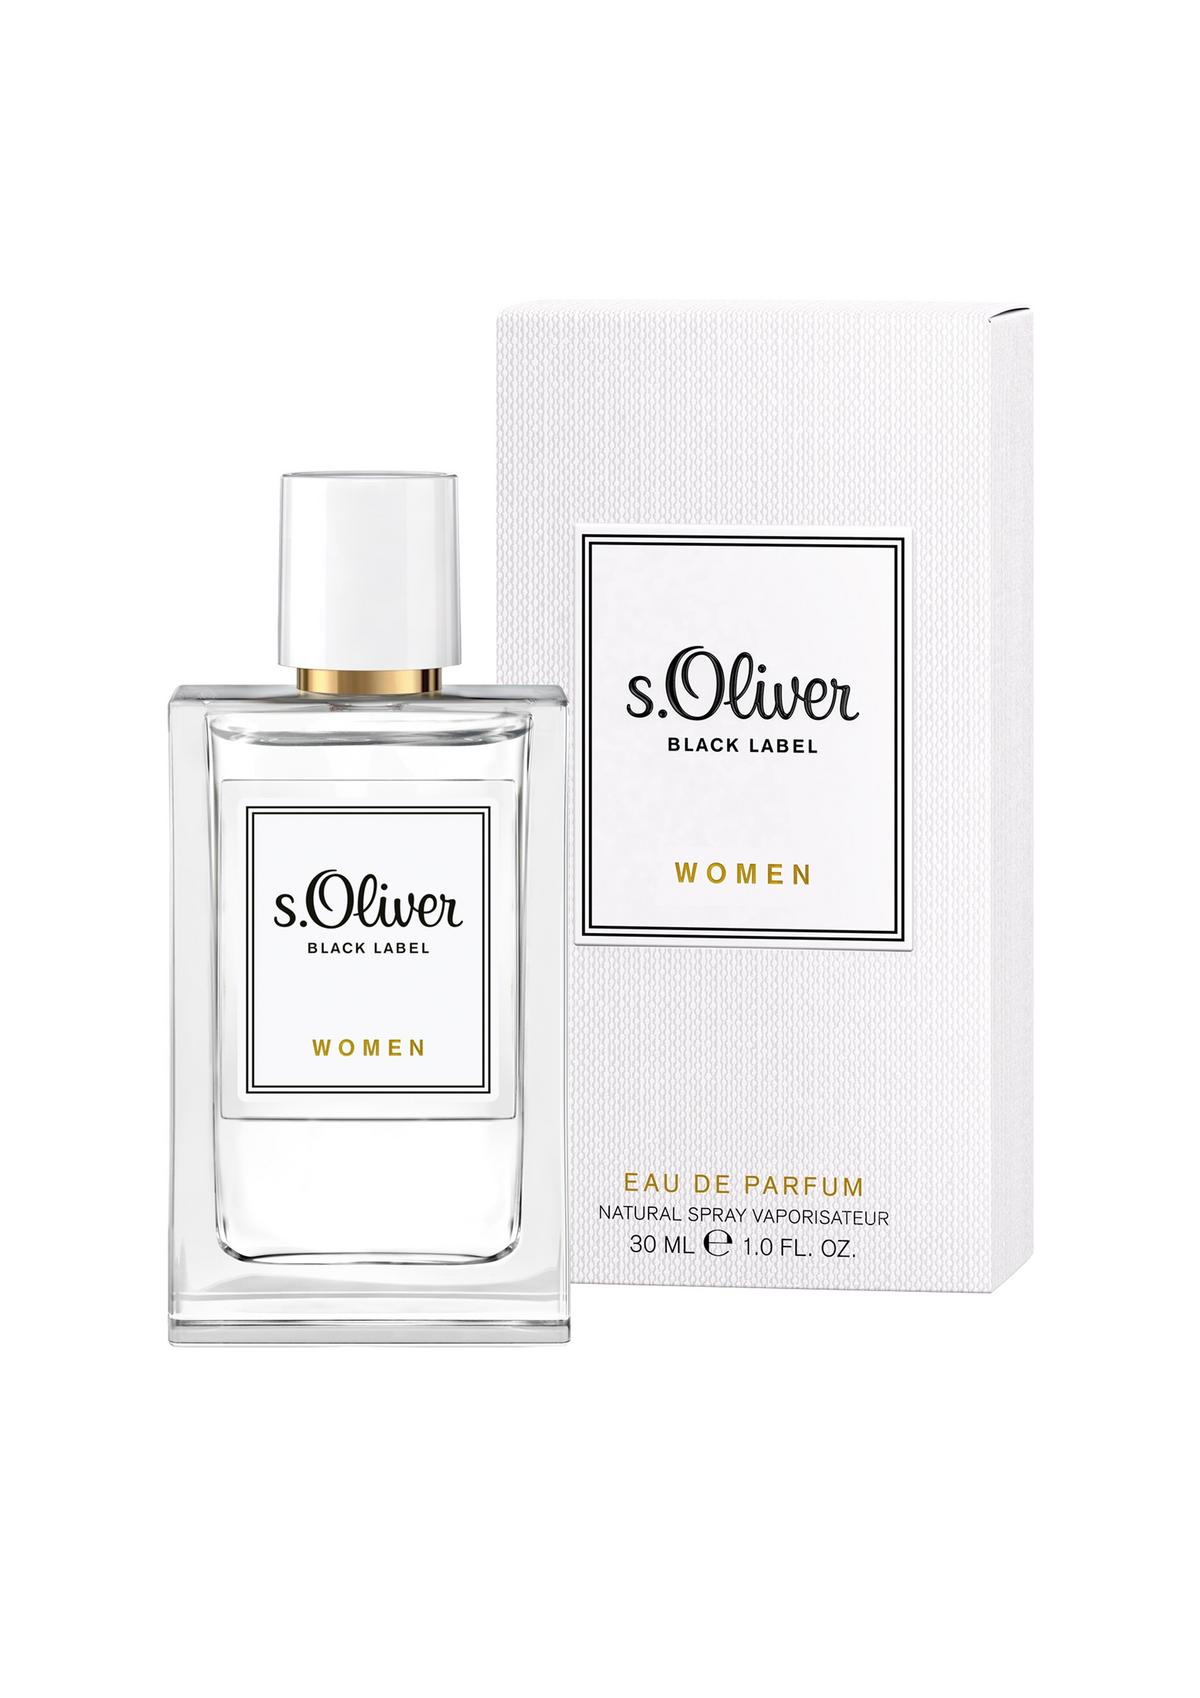 s.Oliver Eau de parfum Black Label Women 30 ml